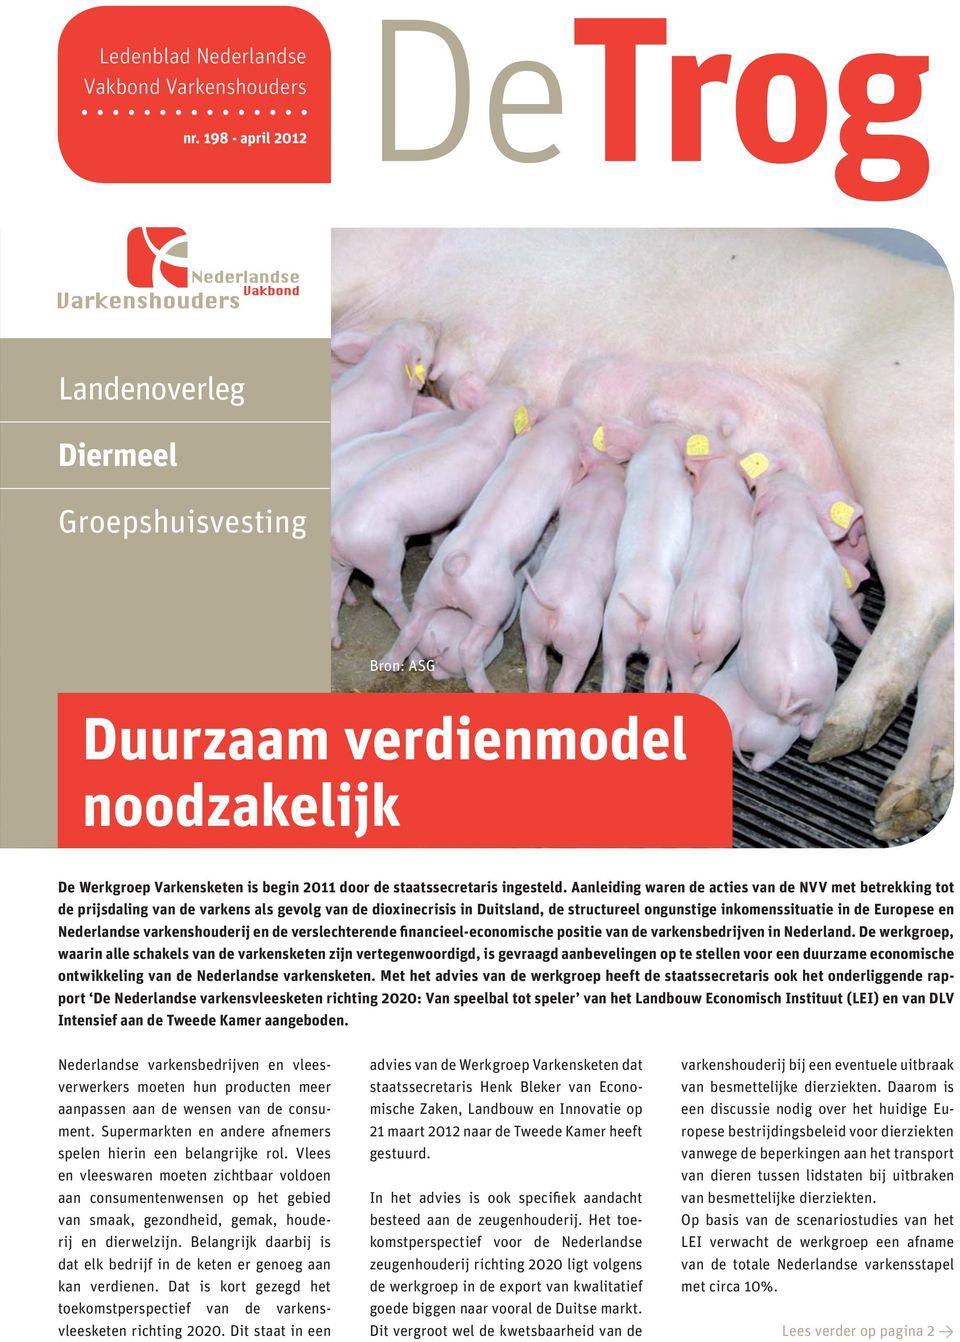 Aanleiding waren de acties van de NVV met betrekking tot de prijsdaling van de varkens als gevolg van de dioxinecrisis in Duitsland, de structureel ongunstige inkomenssituatie in de Europese en